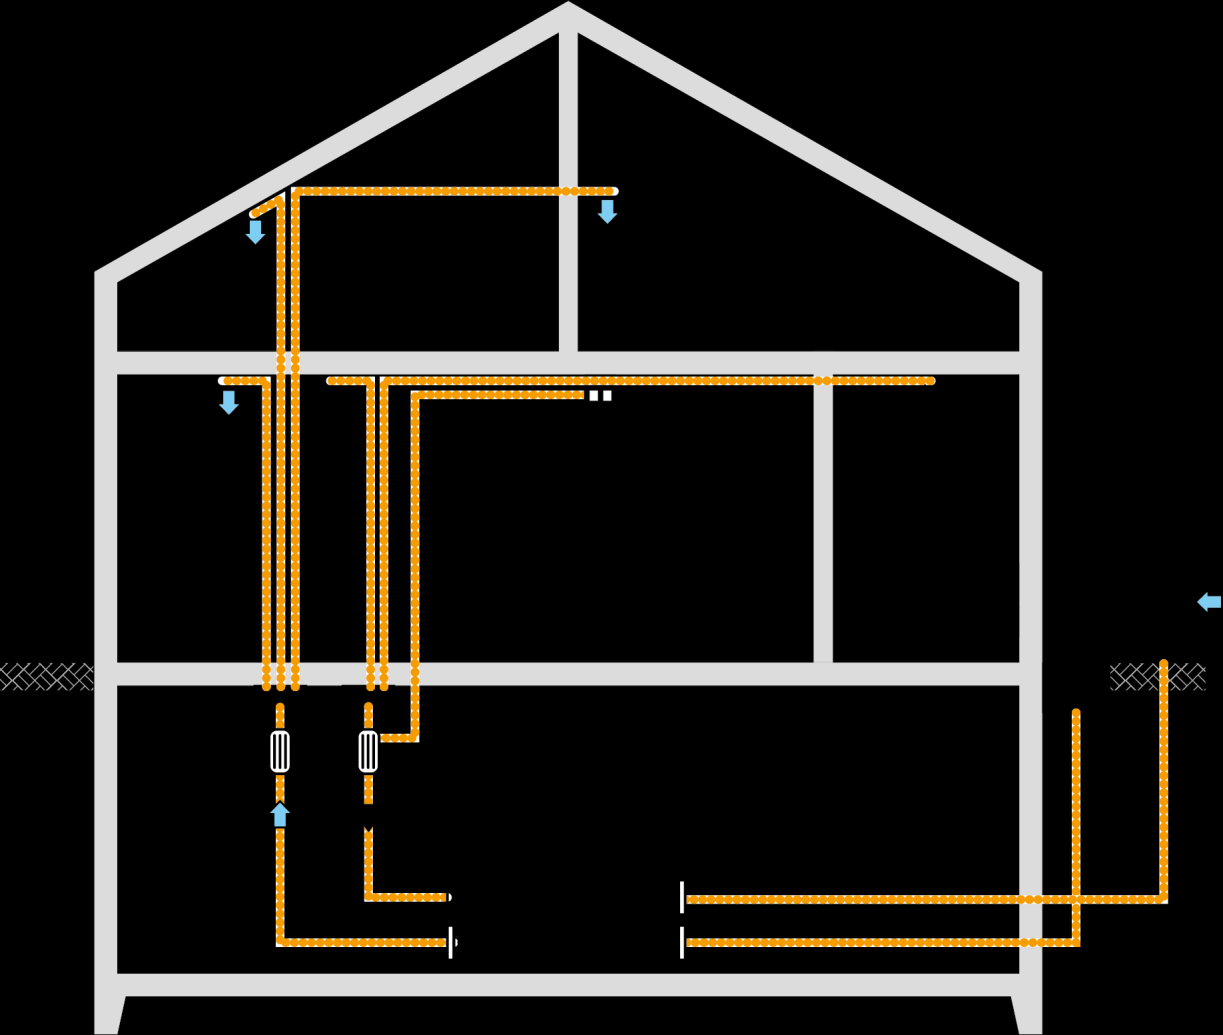 Lufttechnische Anlagen / 25-15de Brandschutzklappe vor Wand / Decke Bekleidung oder Gehäuse mit gleichem Feuerwiderstand wie brandabschnittbildender Bauteil Dehnungsstutzen Durchführung durch